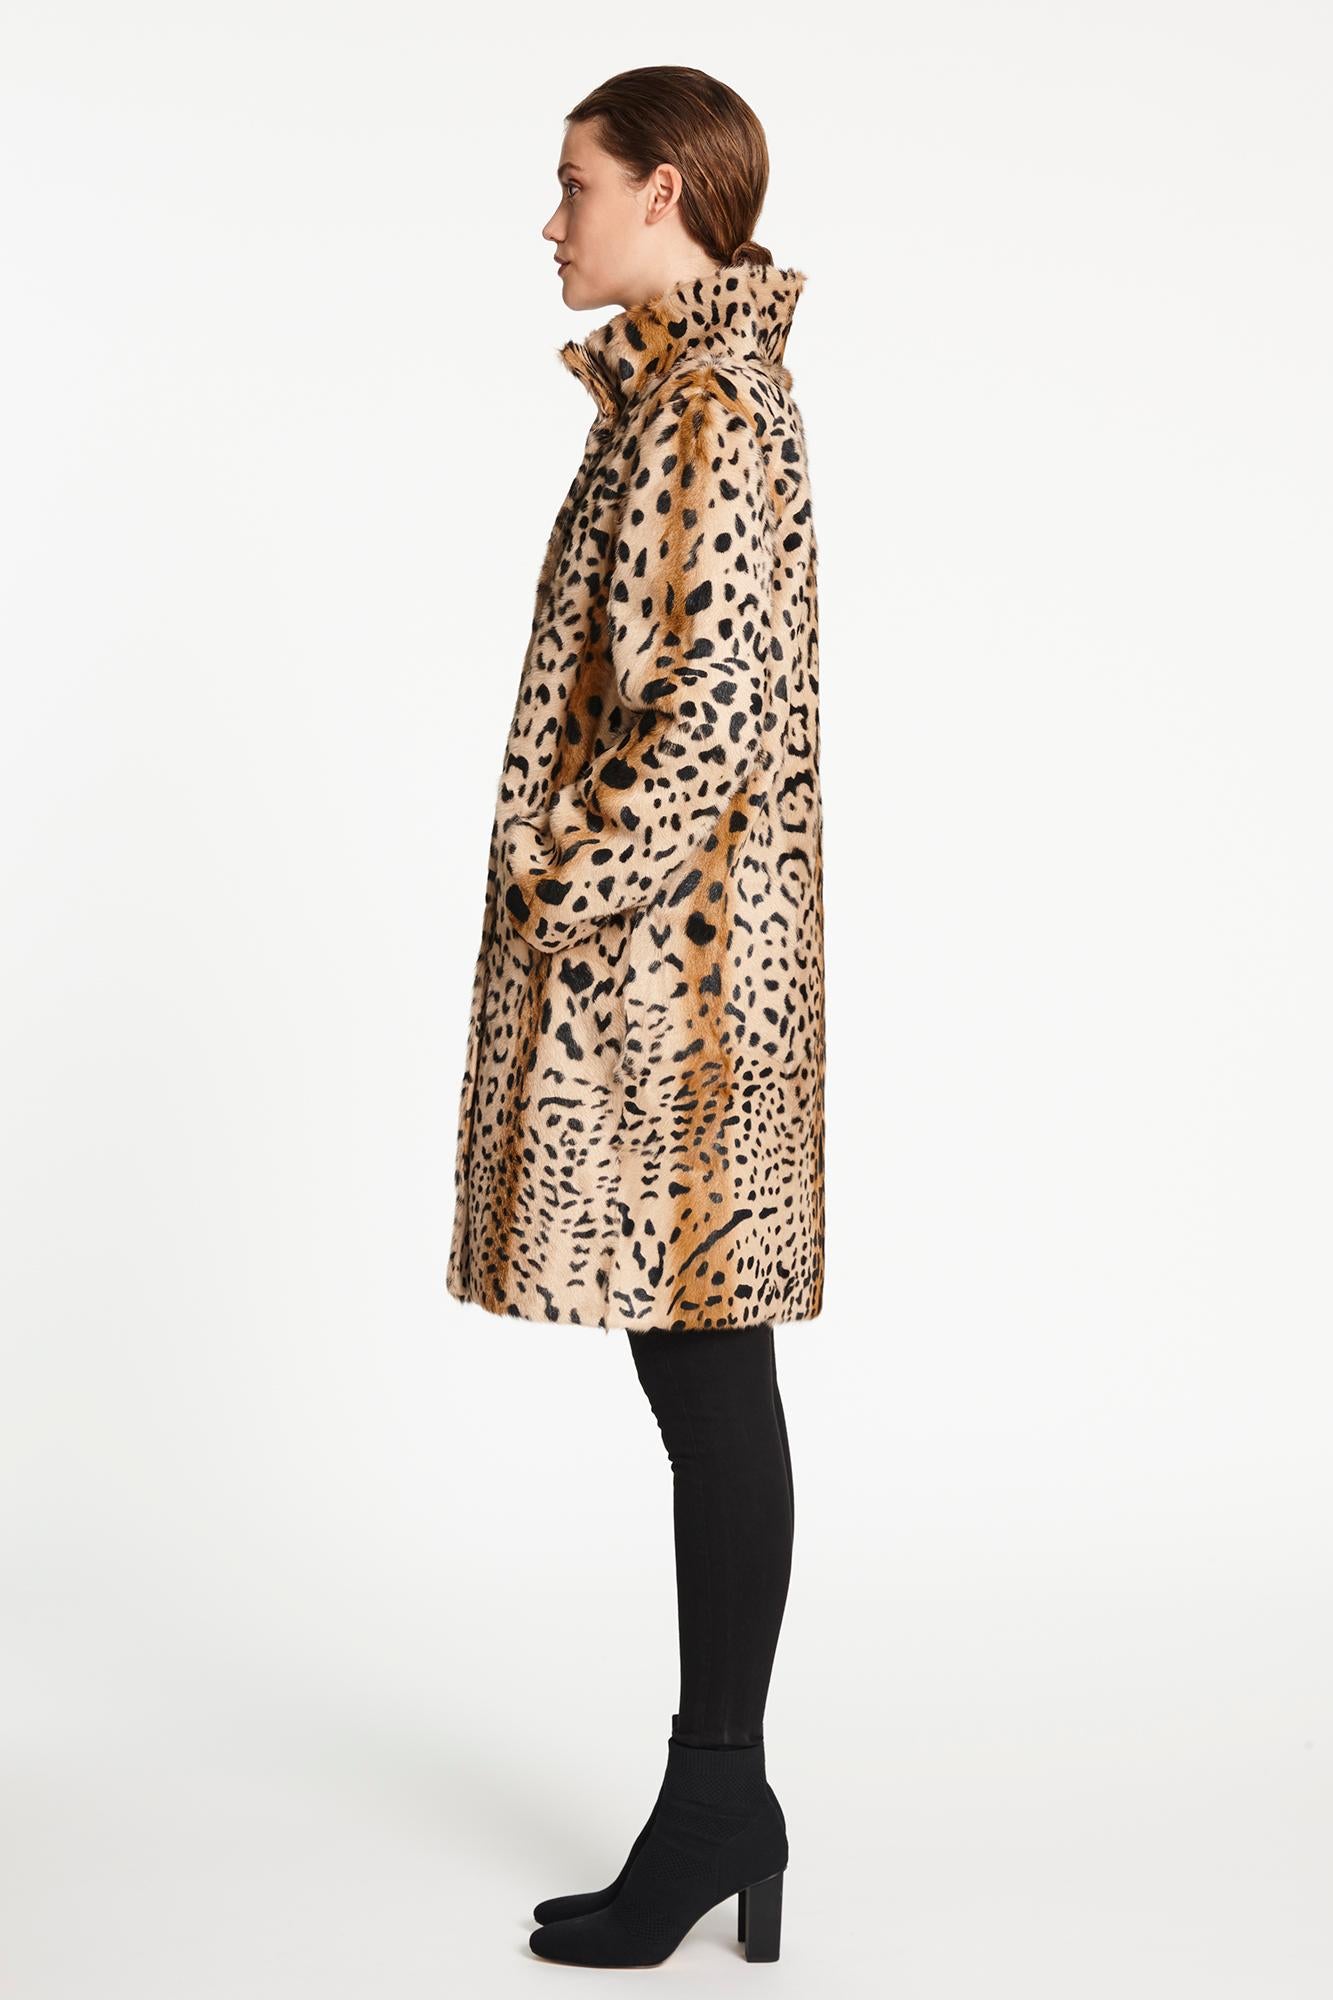 Verheyen Lon High Collar Leopard Print Coat in Goat Hair Fur Size 12-14 4